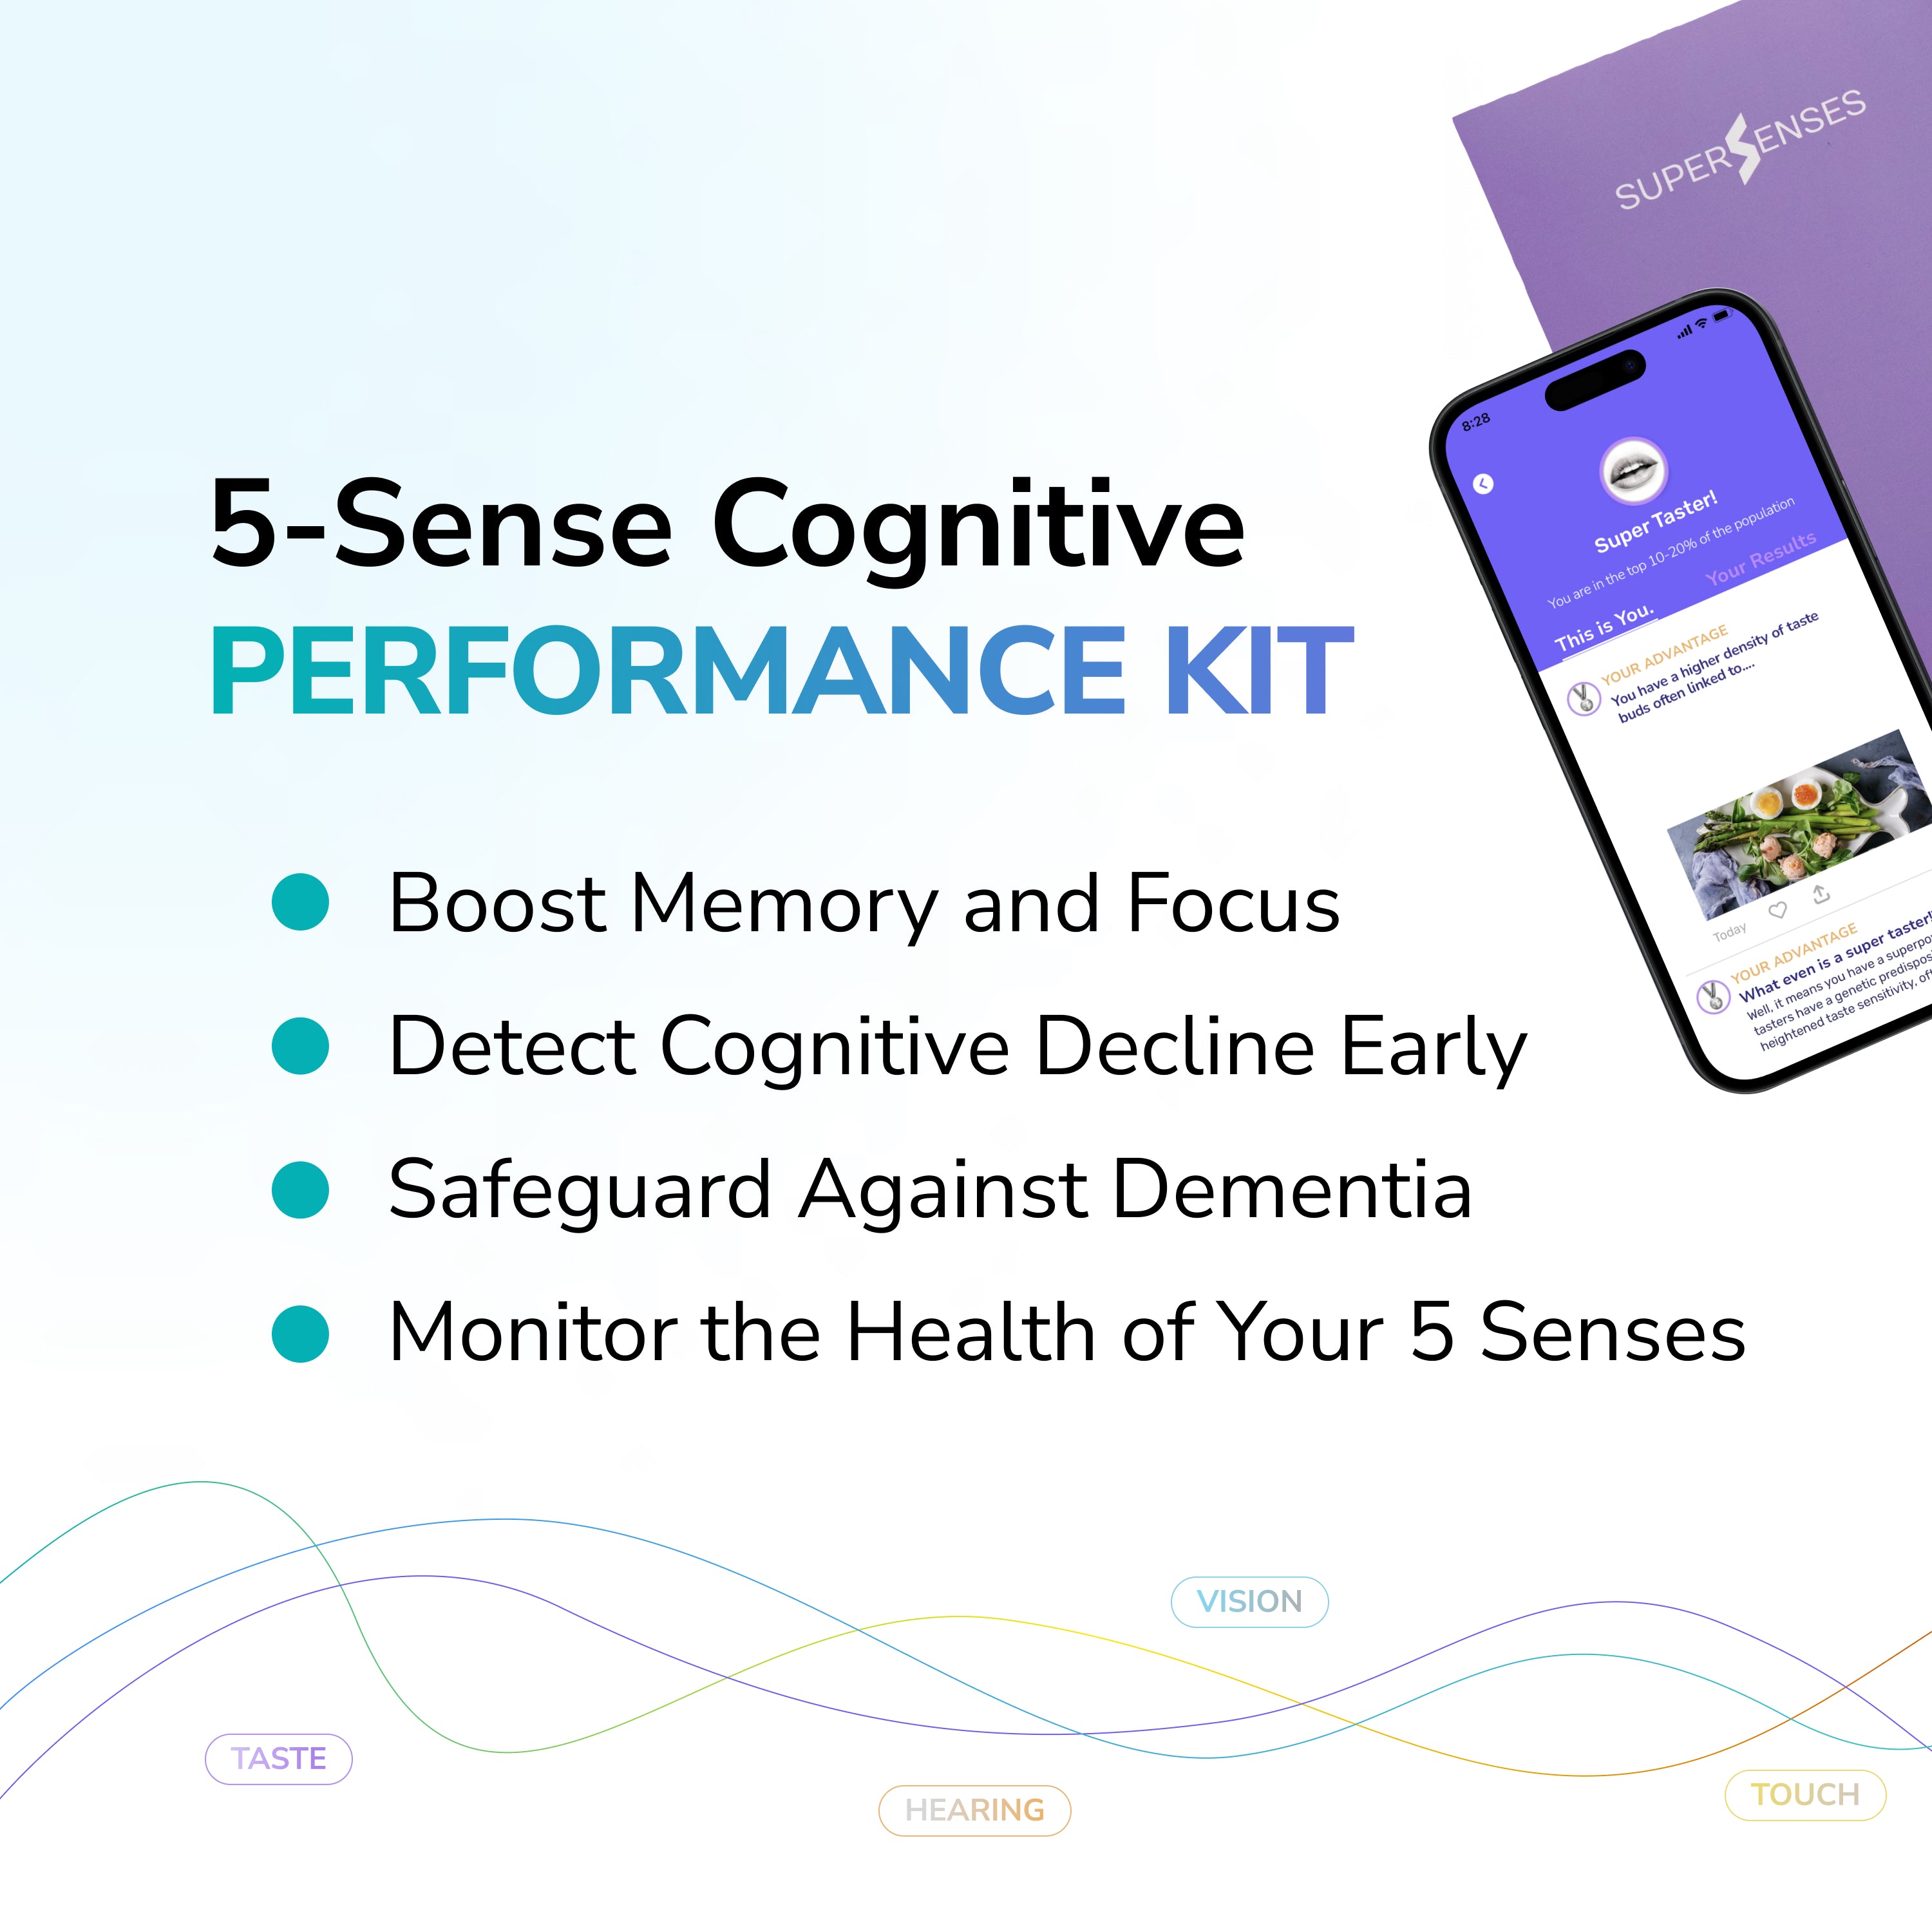 5-Sense Cognitive Performance Kit